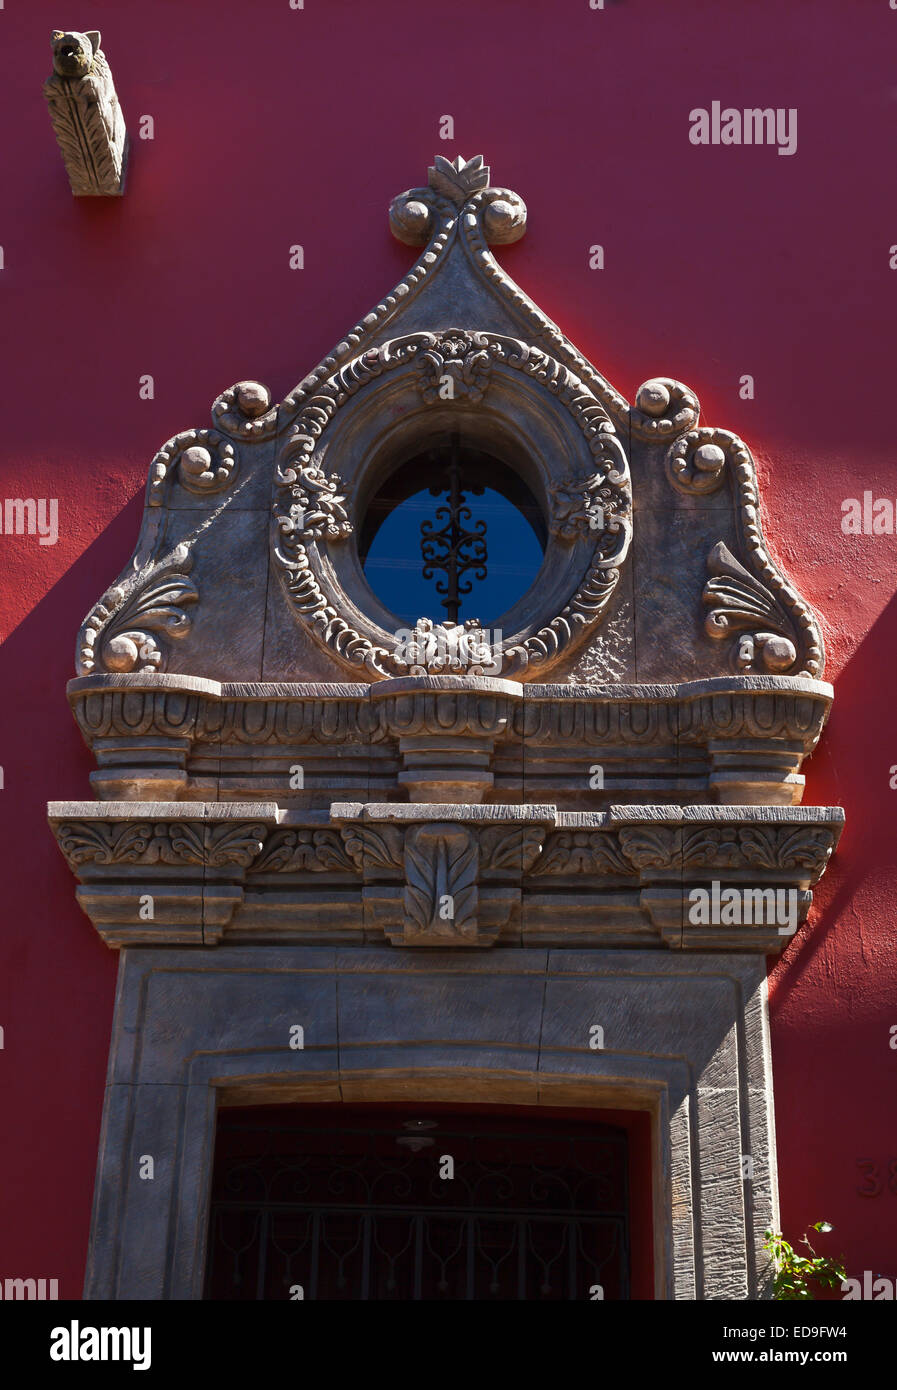 Elaborate LINTEL over a doorway - SAN MIGUEL DE ALLENDE, MEXICO Stock Photo